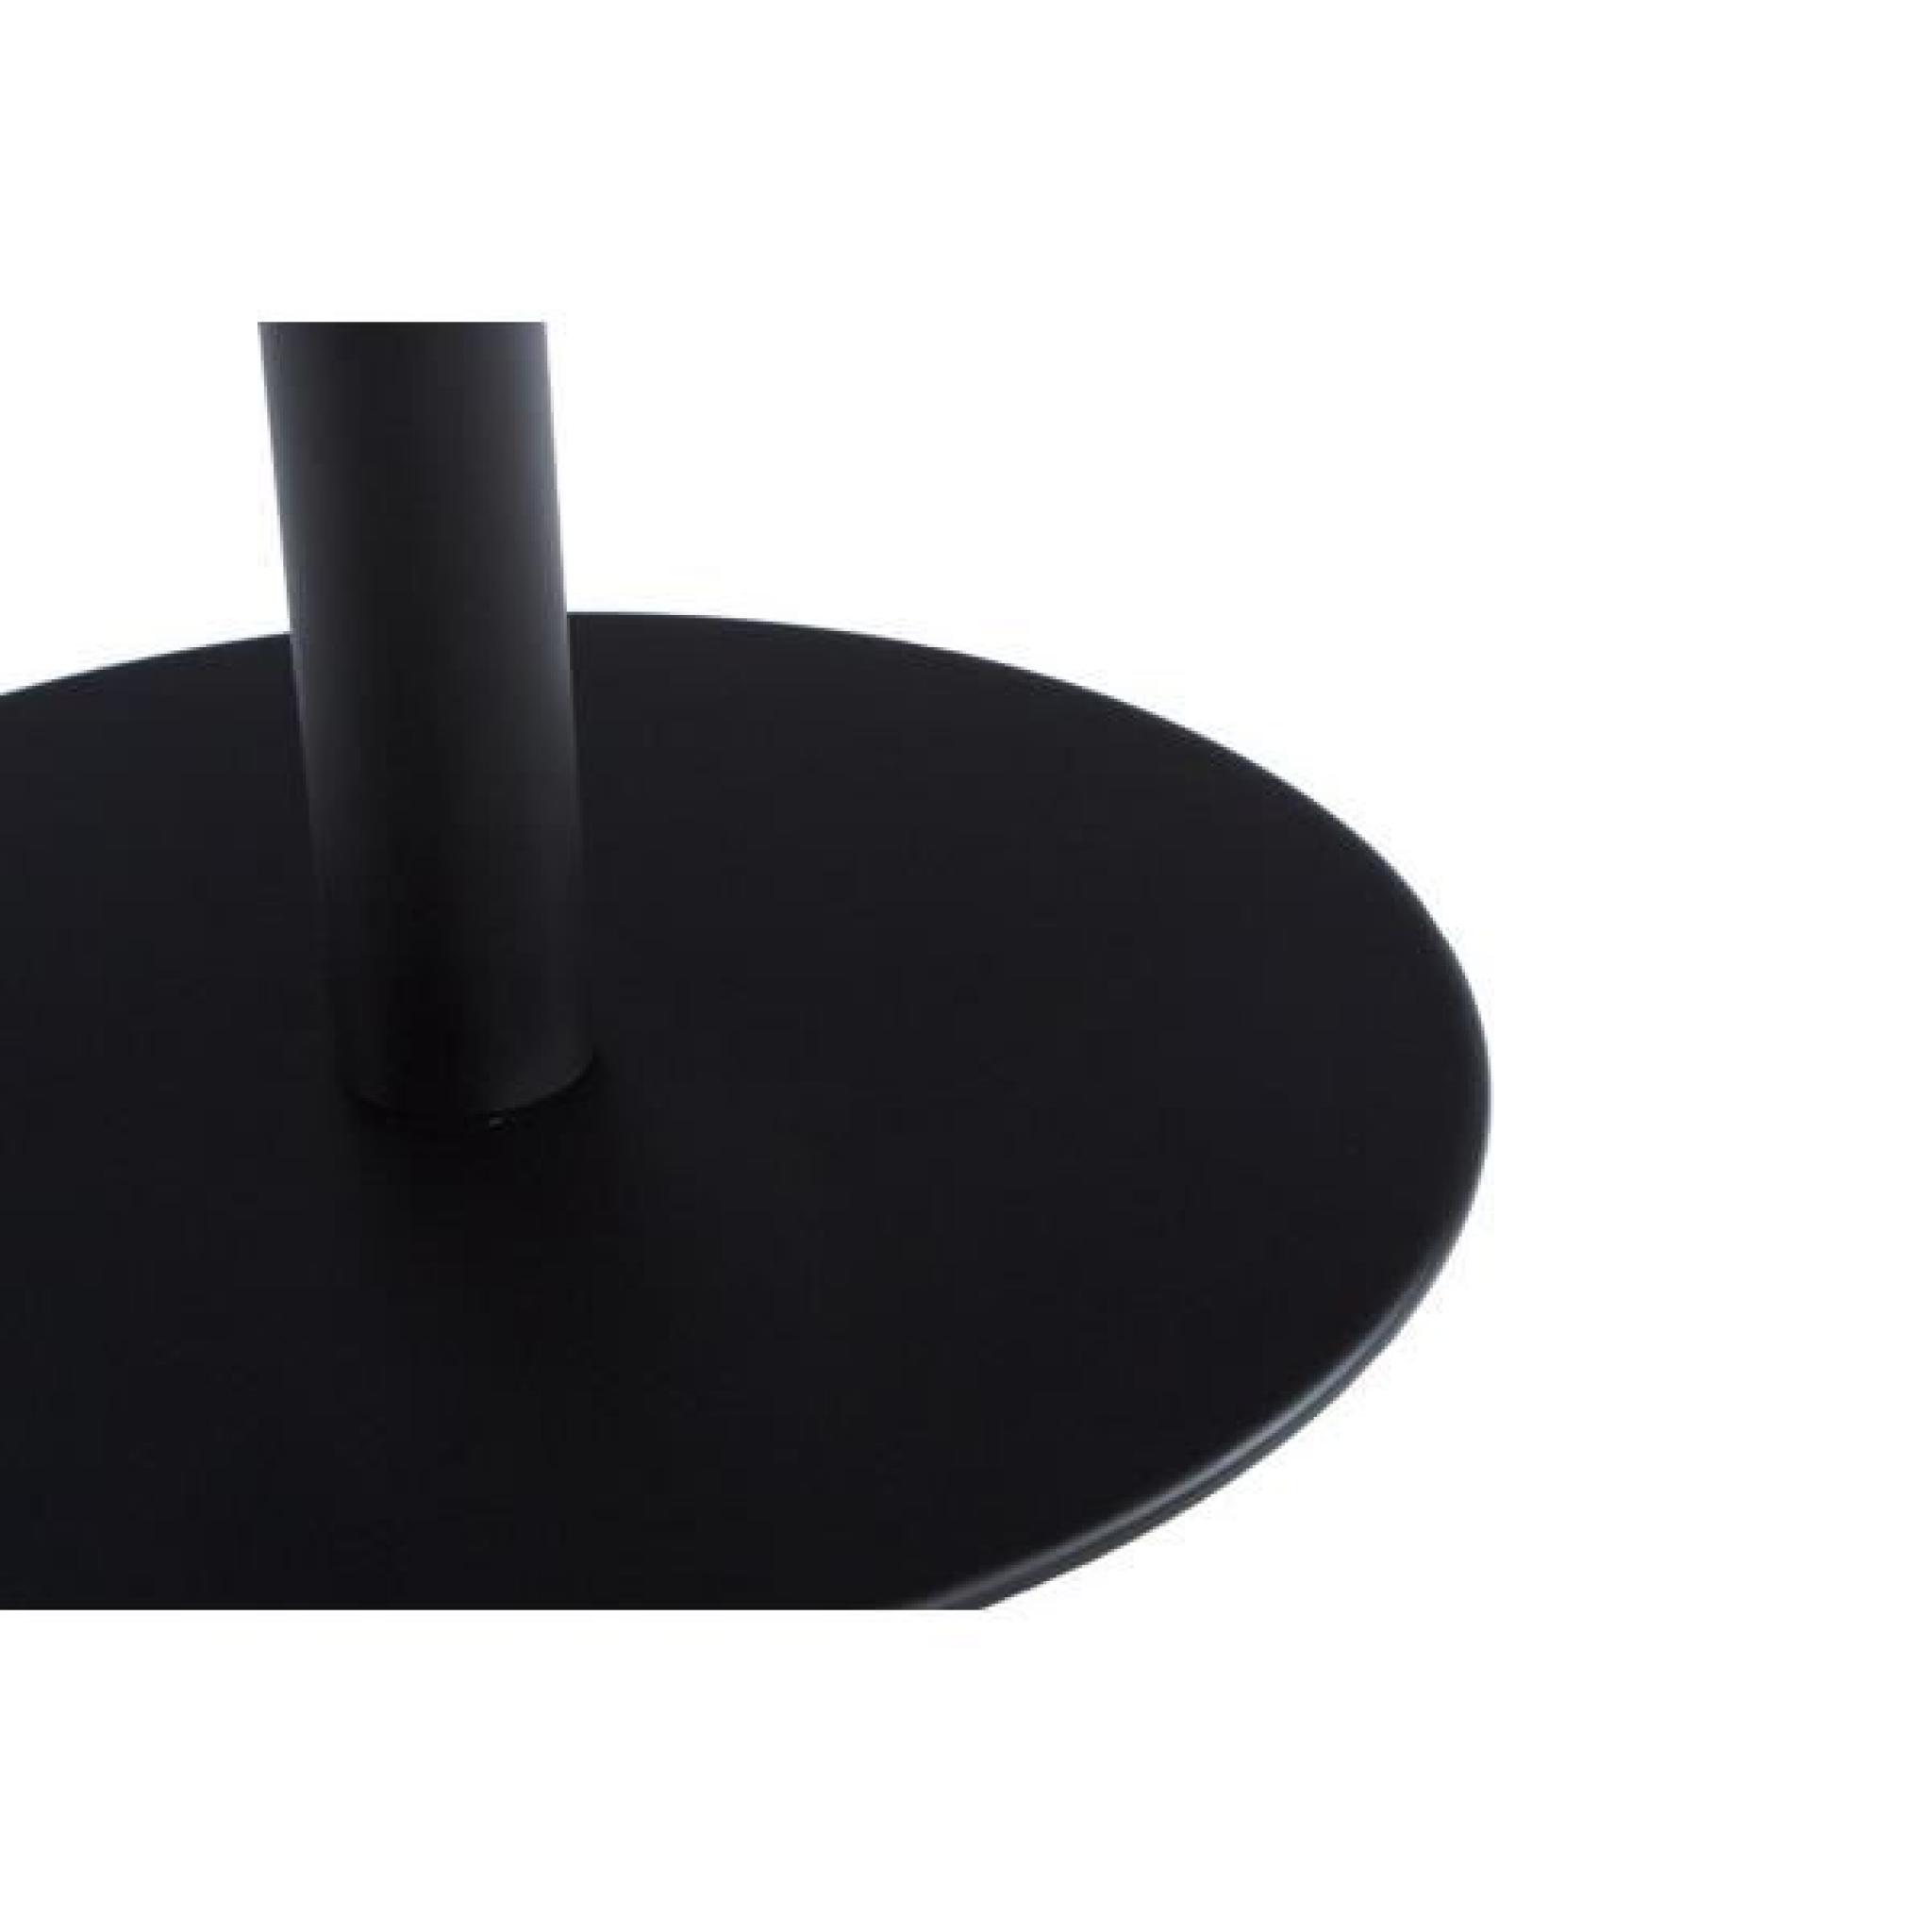 Chaise design en polyuréthane de couleur noire … pas cher